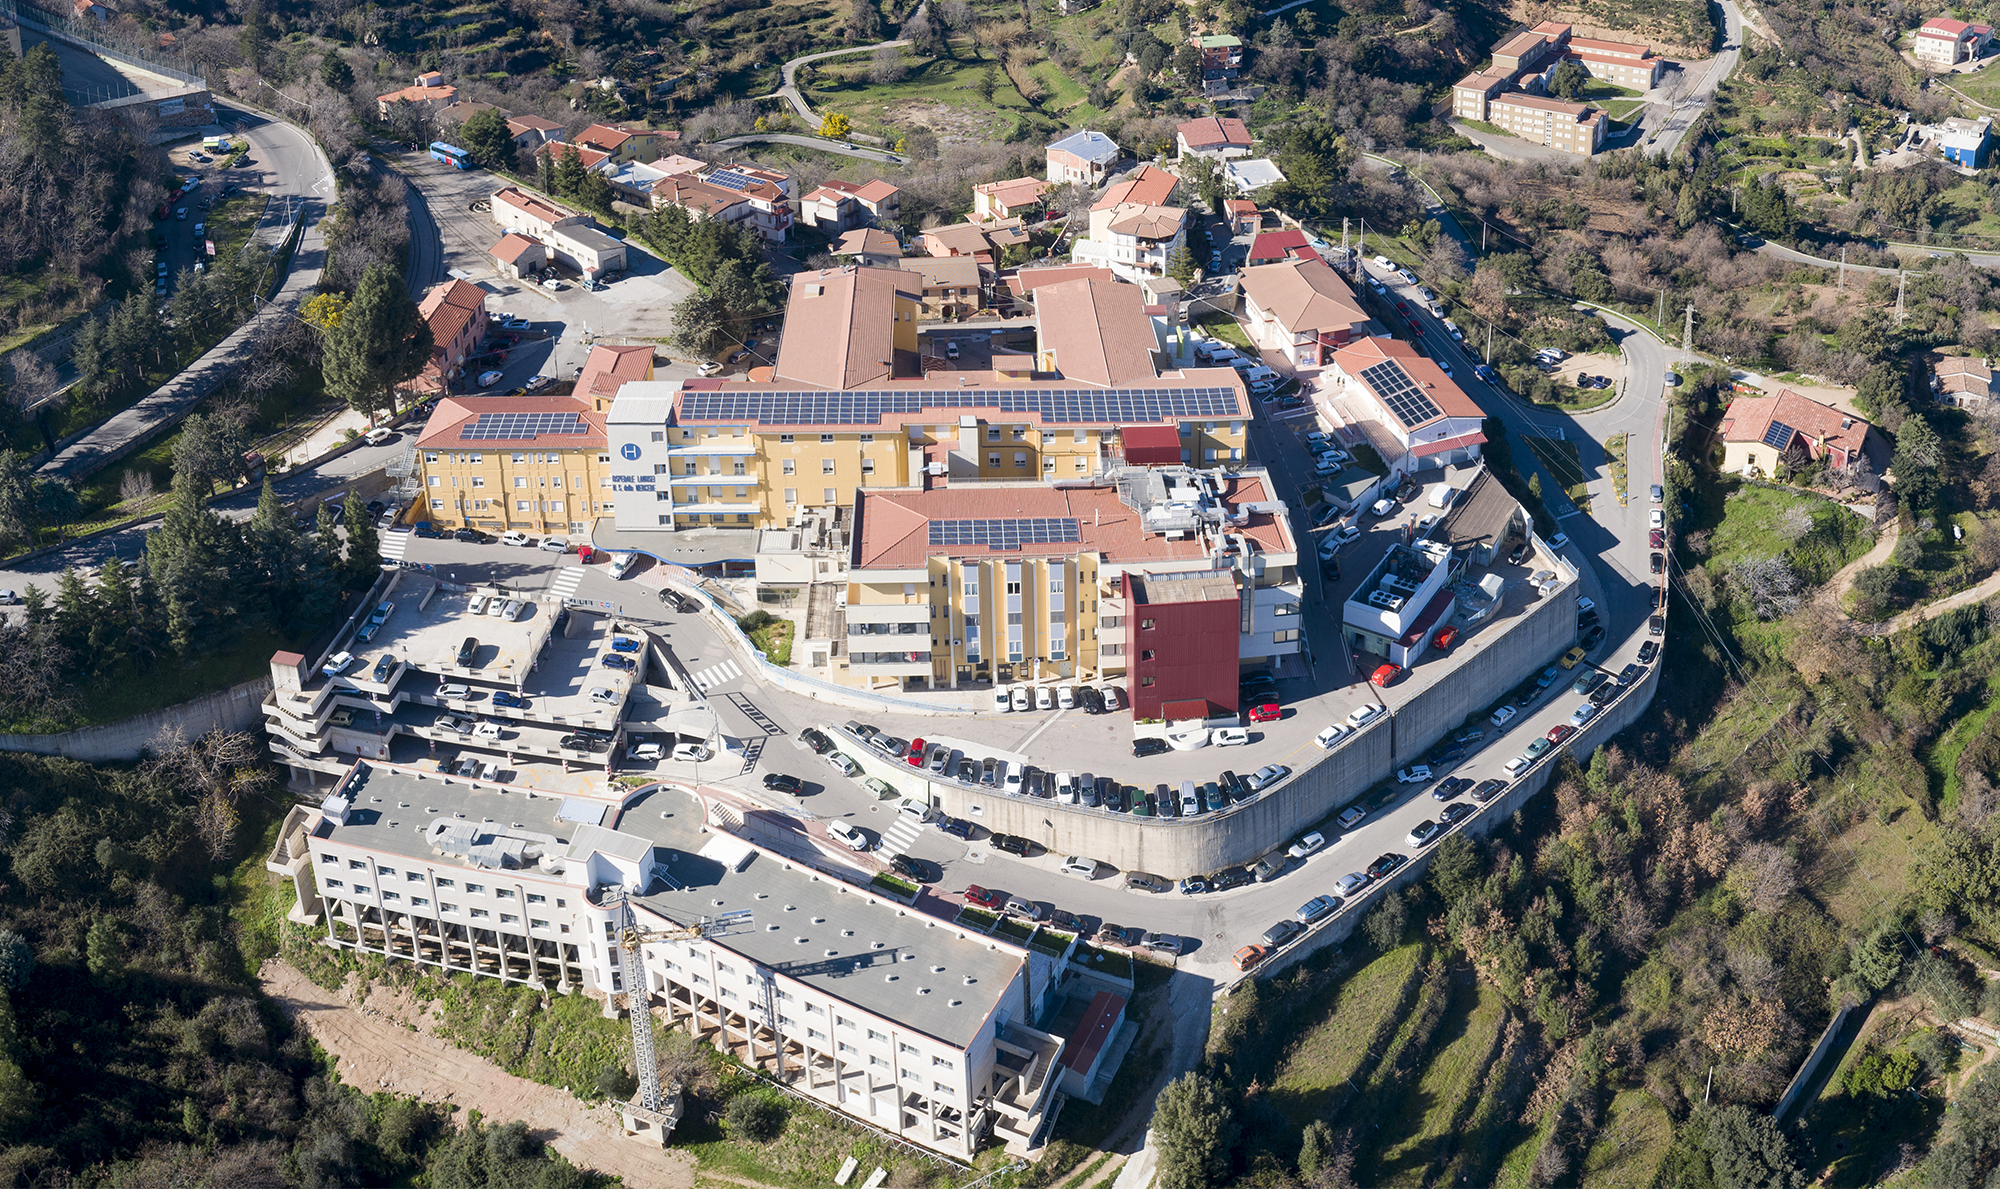 Panoramica dell'ospedale di Lanusei dall'alto